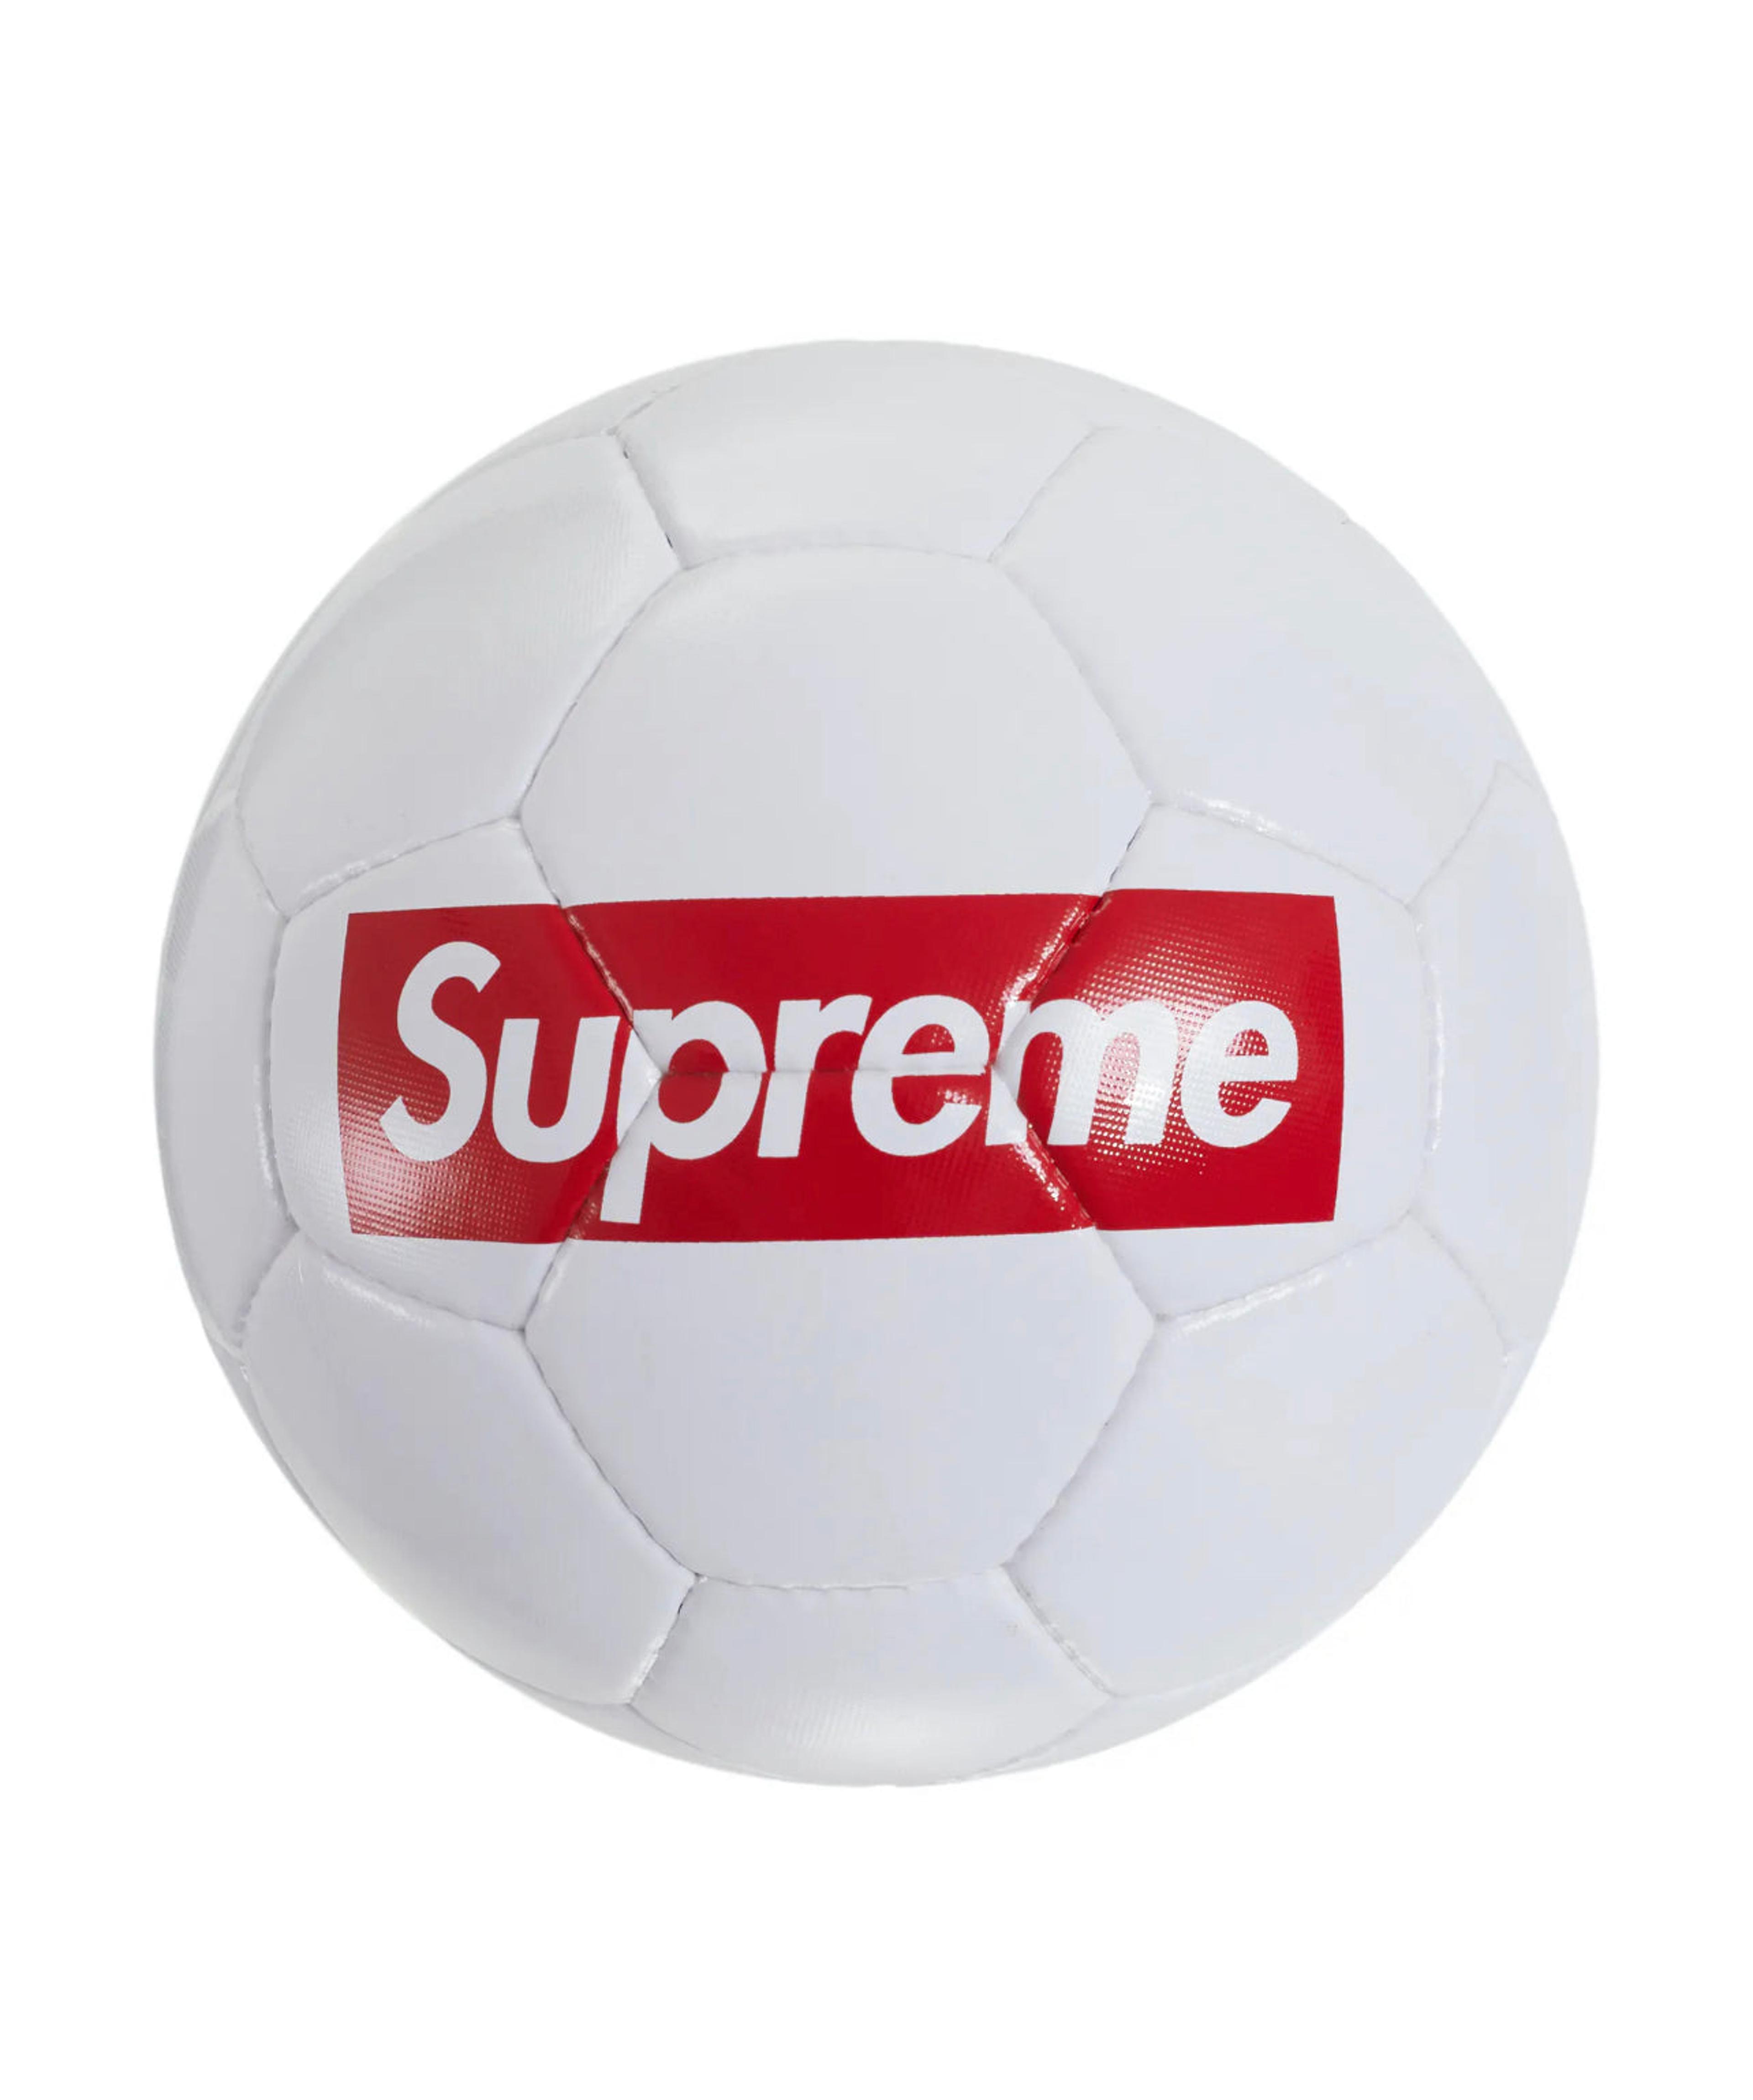 Supreme x Umbro Soccer Ball